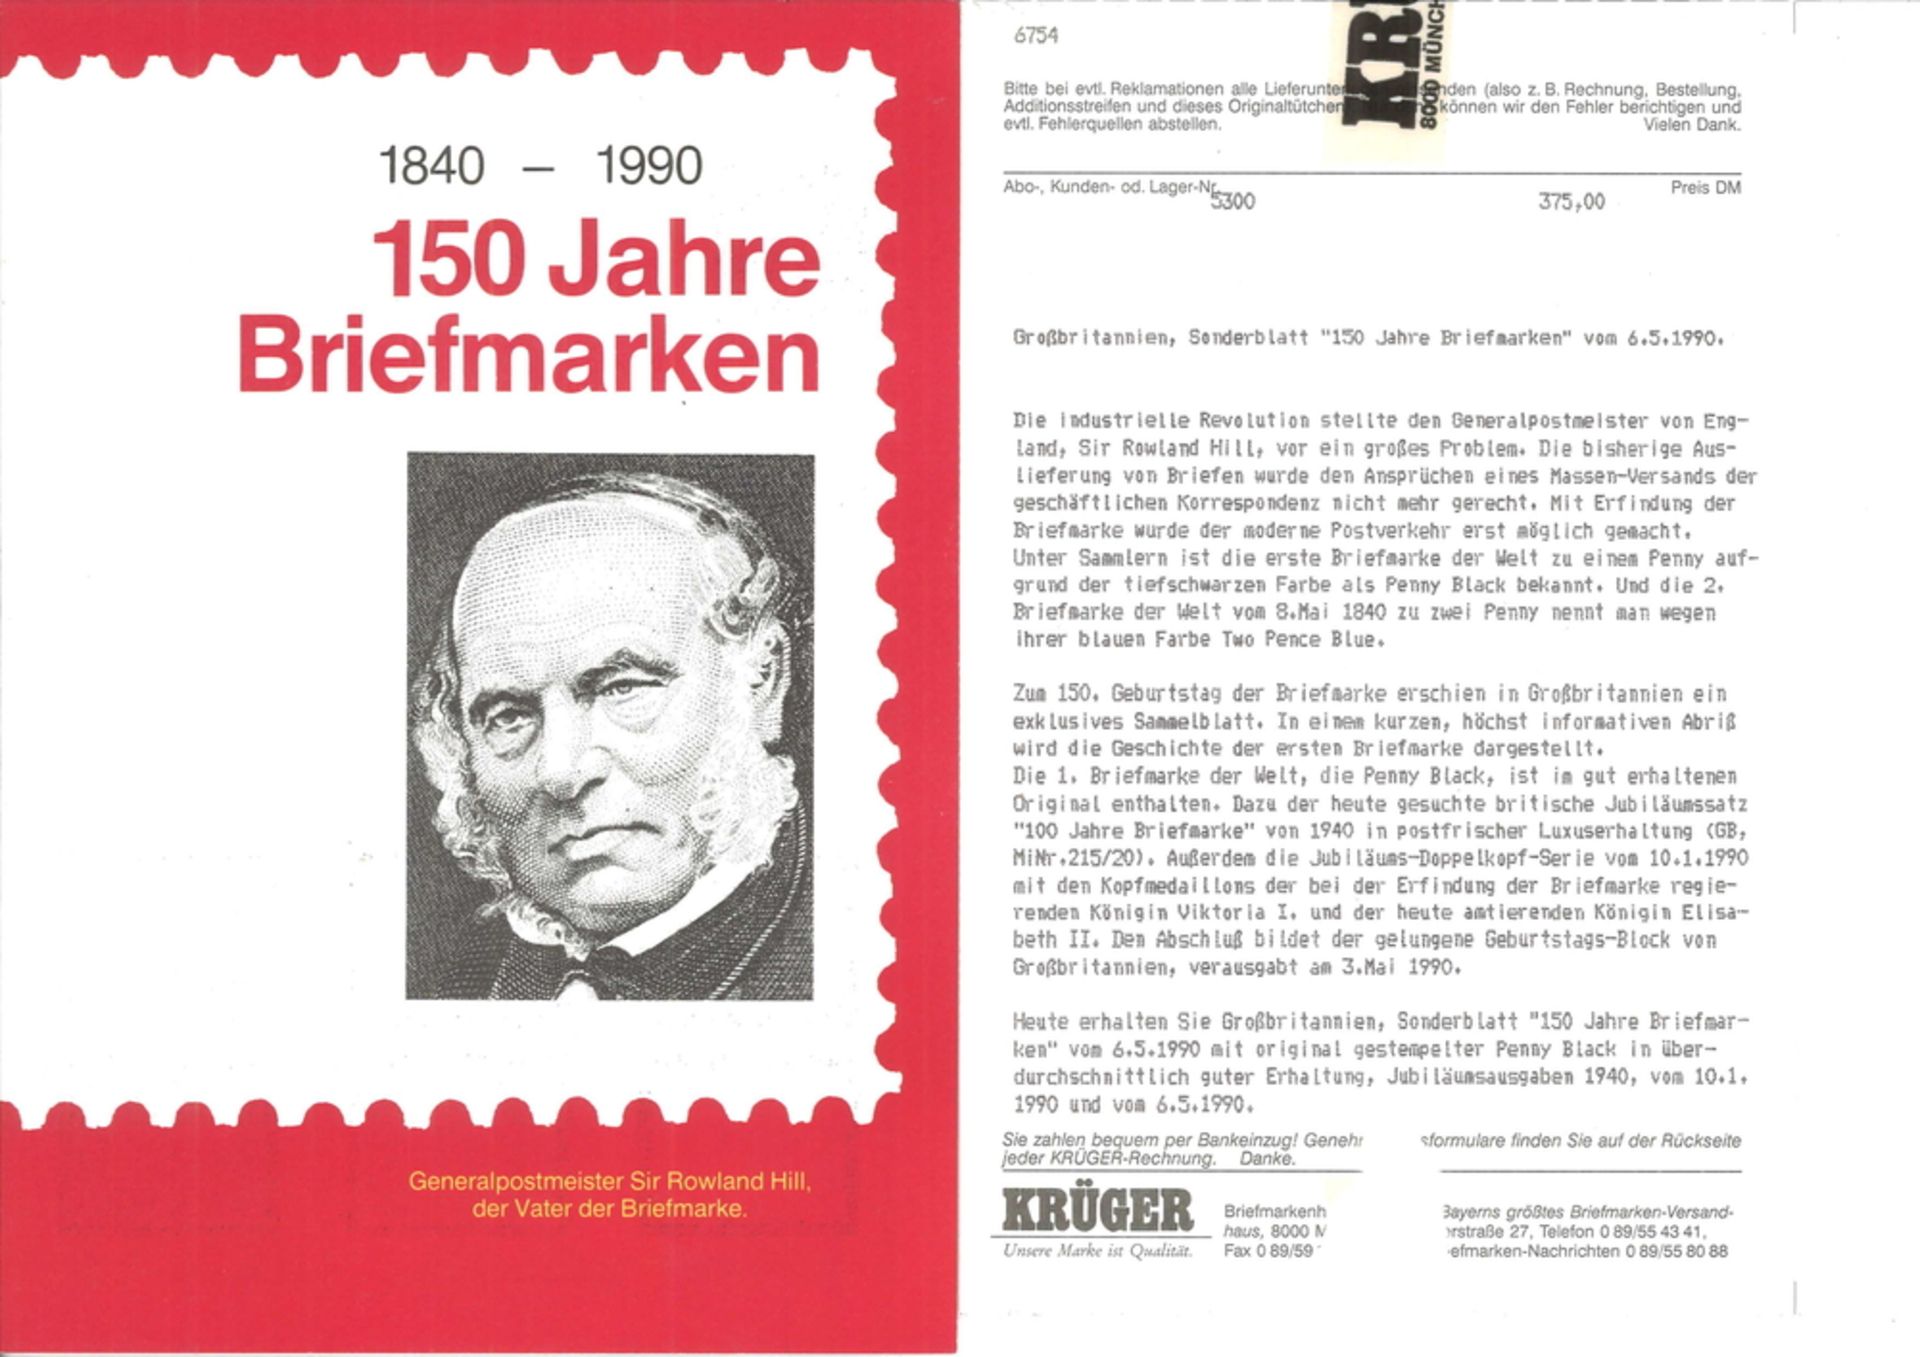 Großbritannien, Sonderblatt "150 Jahre Briefmarken" vom 06.05.1990" Die industr. Revolution - Image 2 of 2